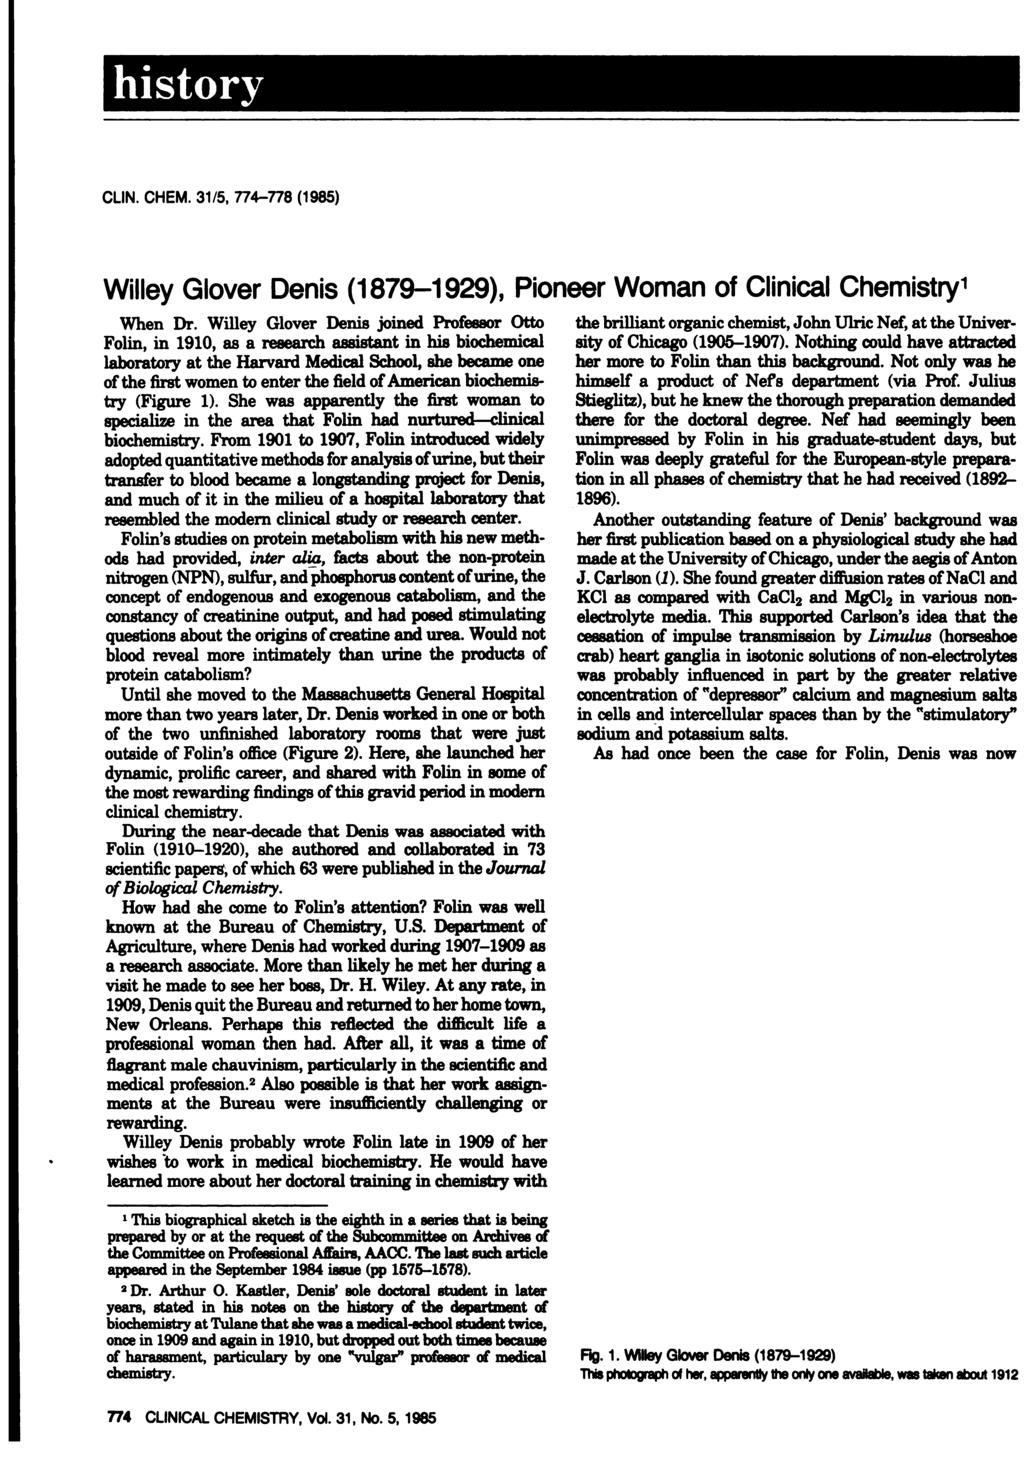 CLIN. CHEM. 31/5, 774-778 (1985) WilleyGlover Denis(1879-1929), PioneerWoman of ClinicalChemistry1 When Dr.